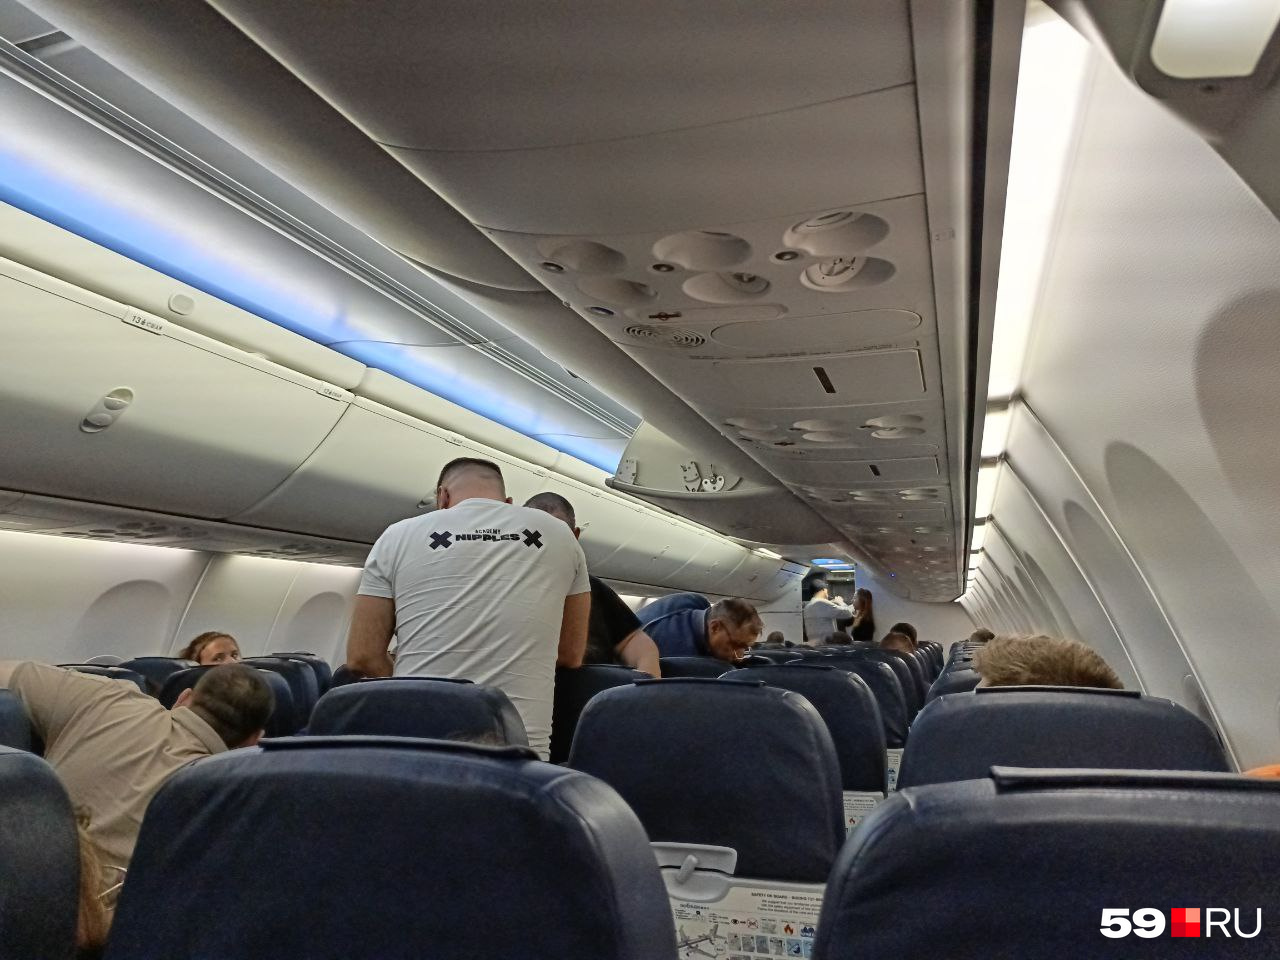 Пассажиры рейса 433 после посадки в Кольцово остались на борту самолета